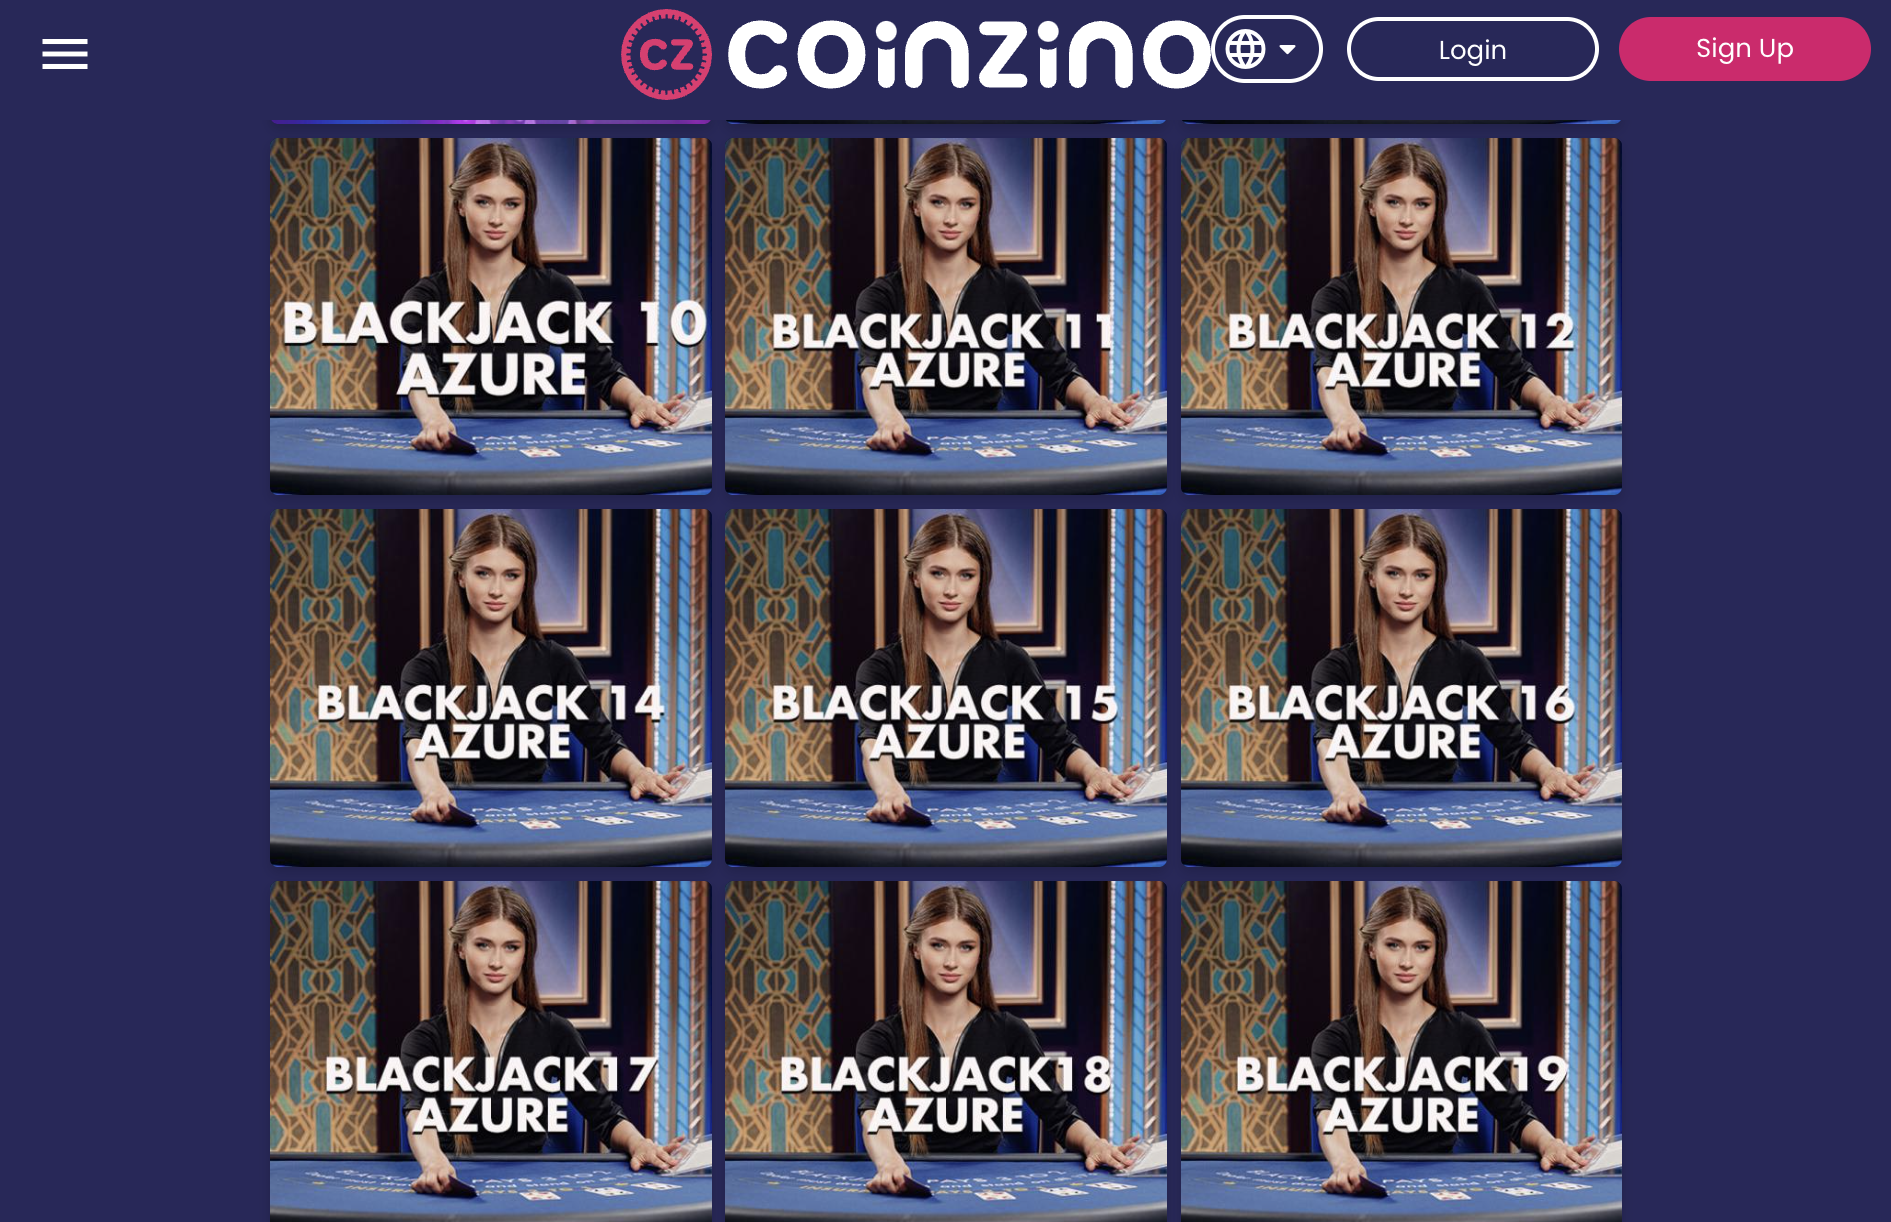 Coinzino Live dealer blackjack games